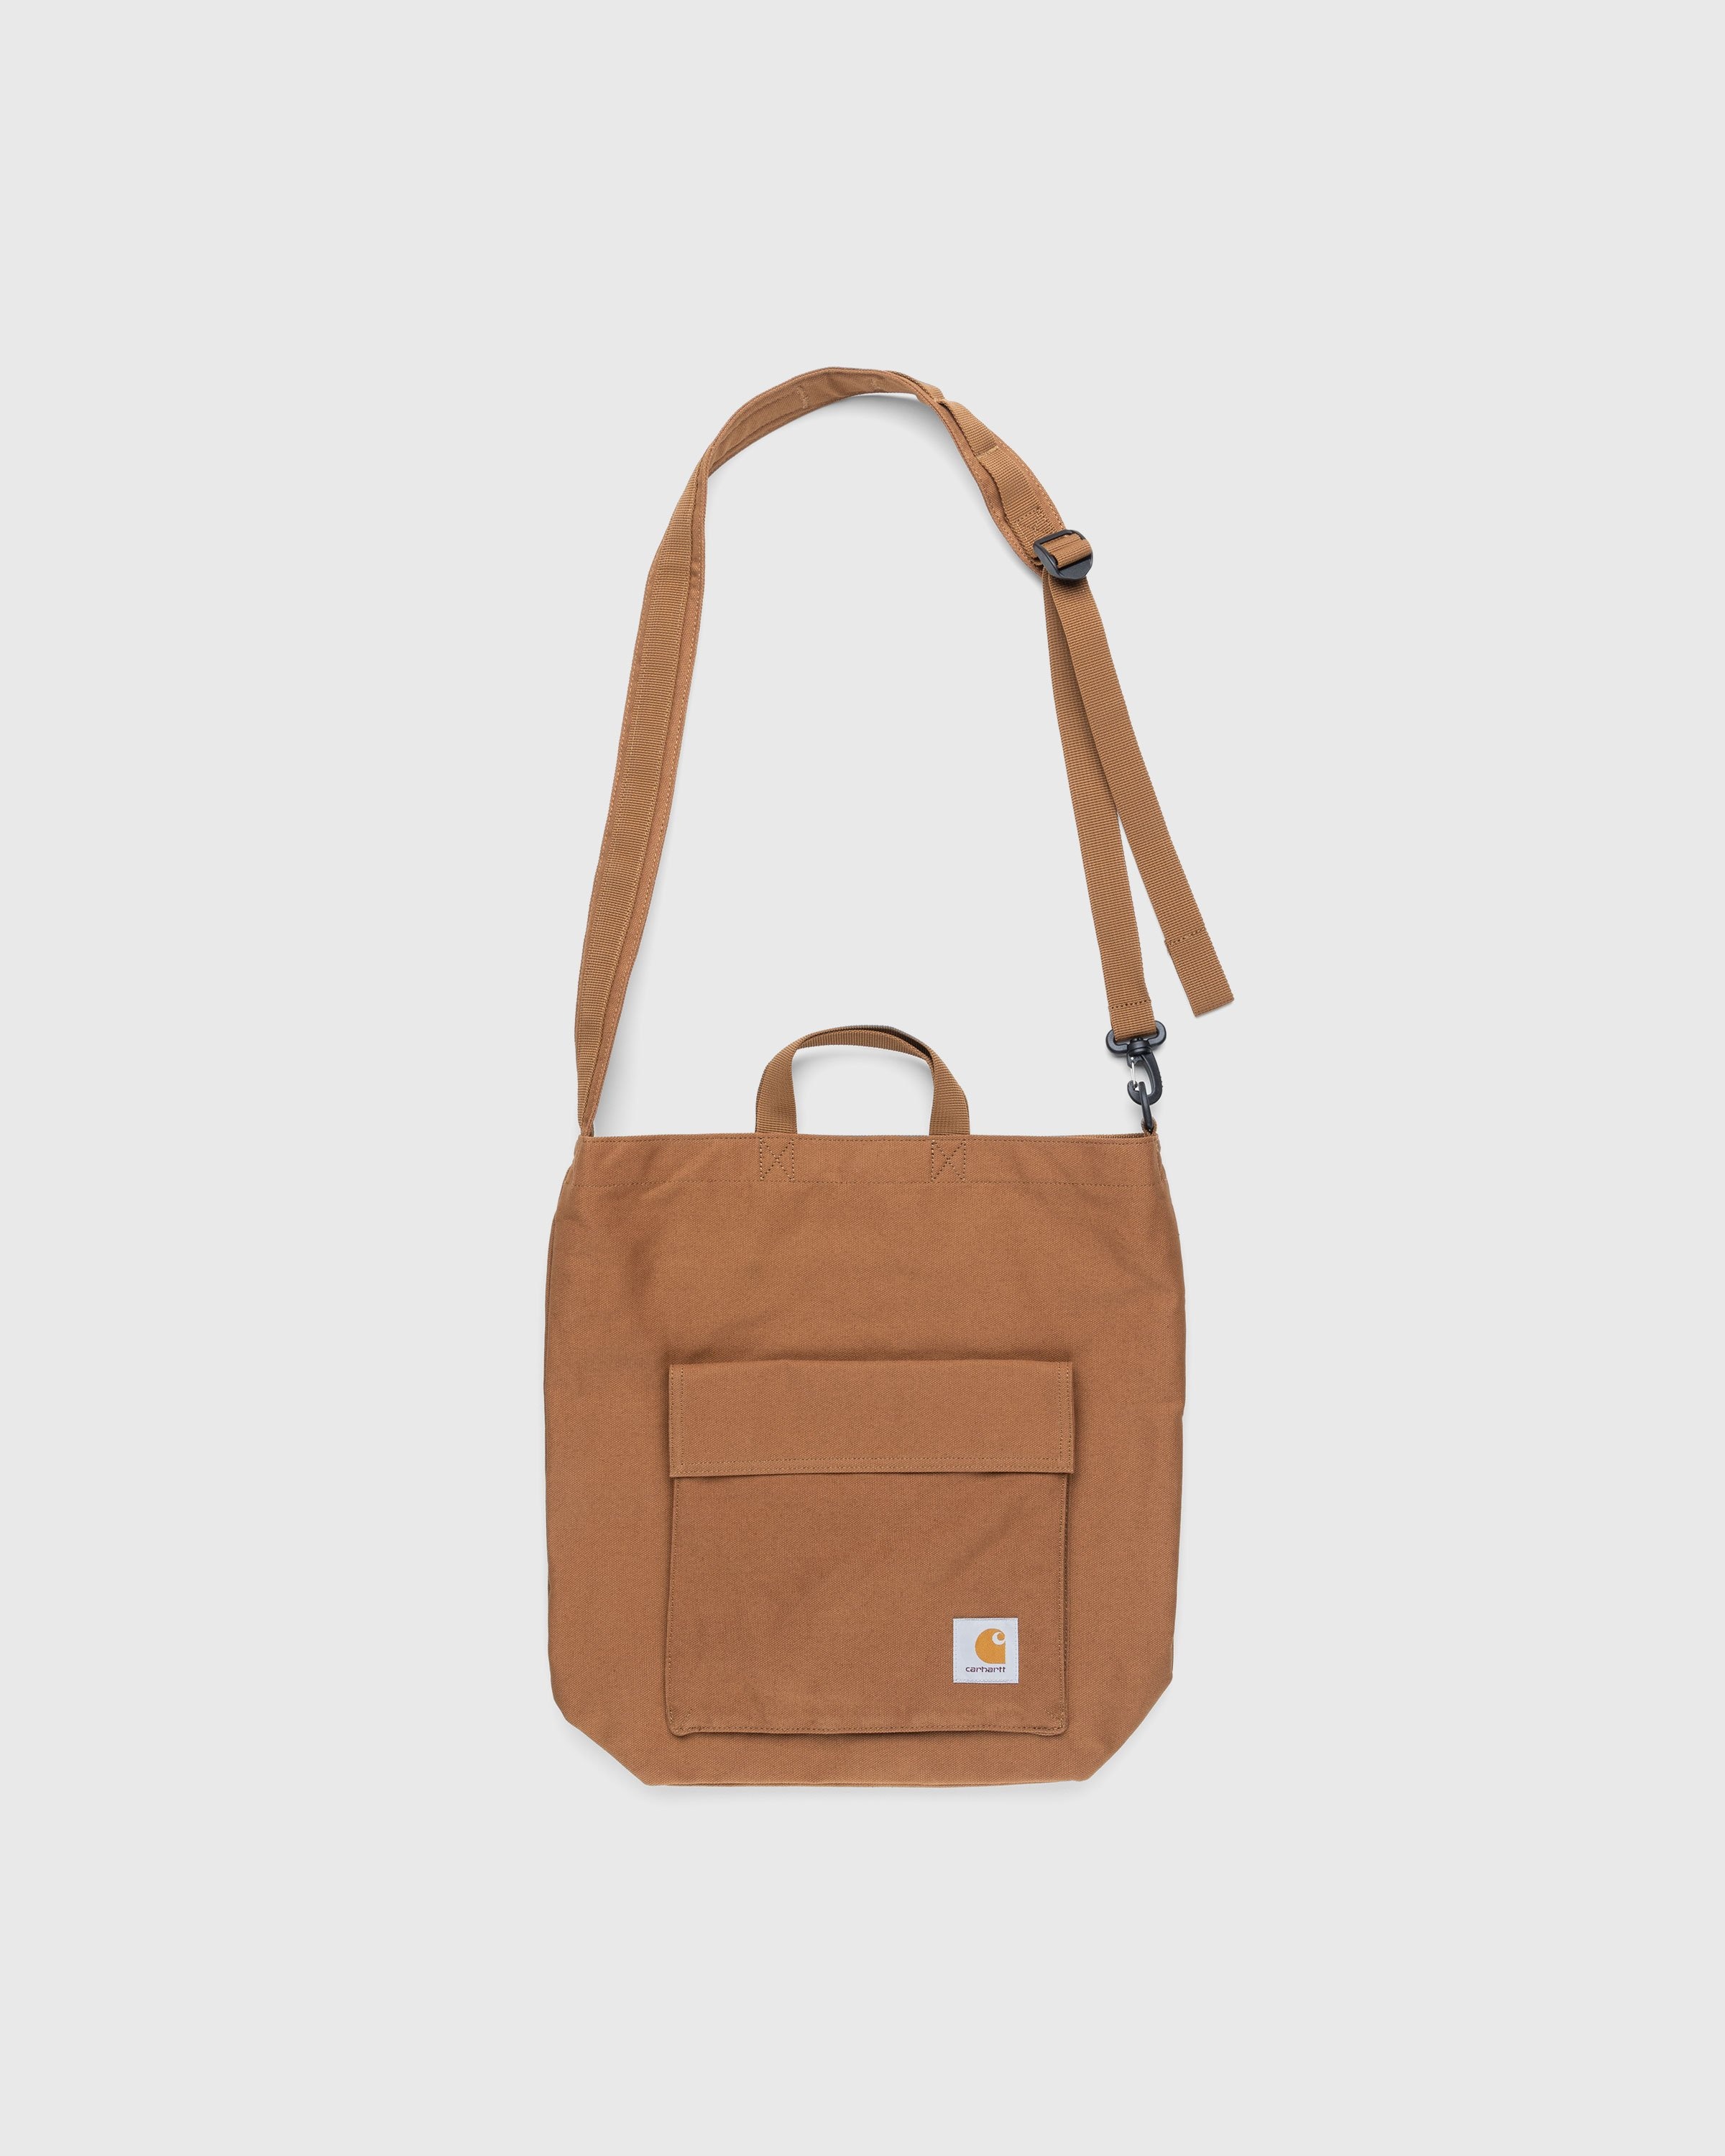 Carhartt purse bag🤎  Carhartt bag, Bags, Carhartt fashion